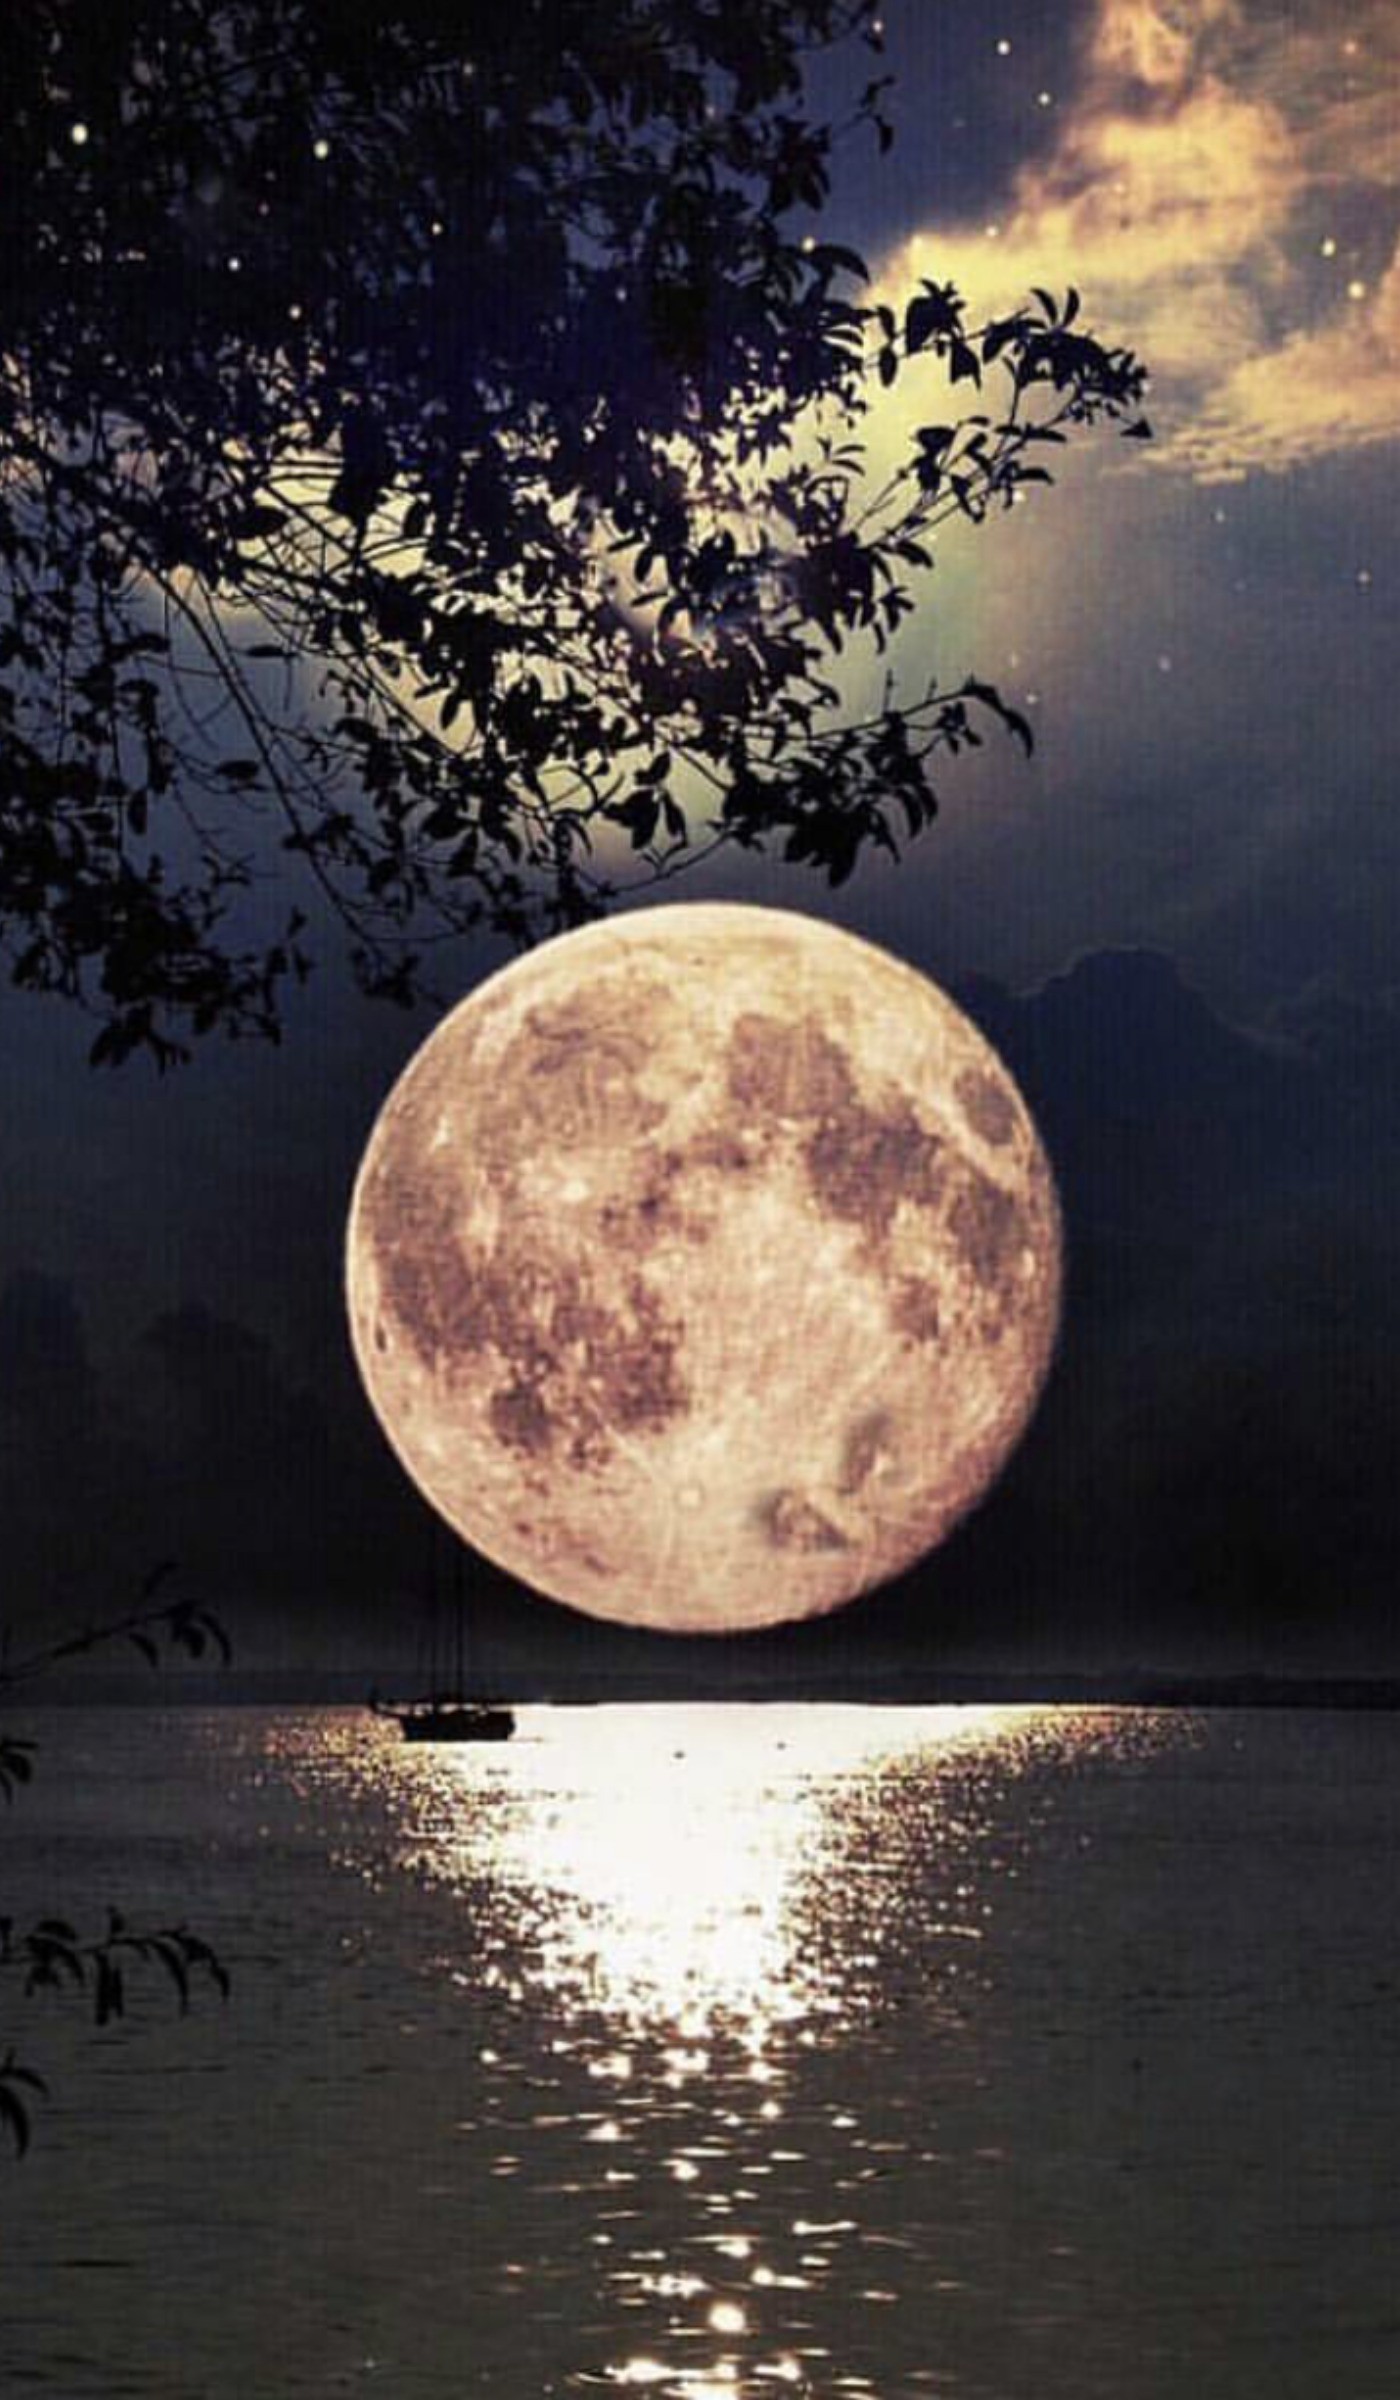 عکس زیبای ماه در طبیعت با منظره اسمان